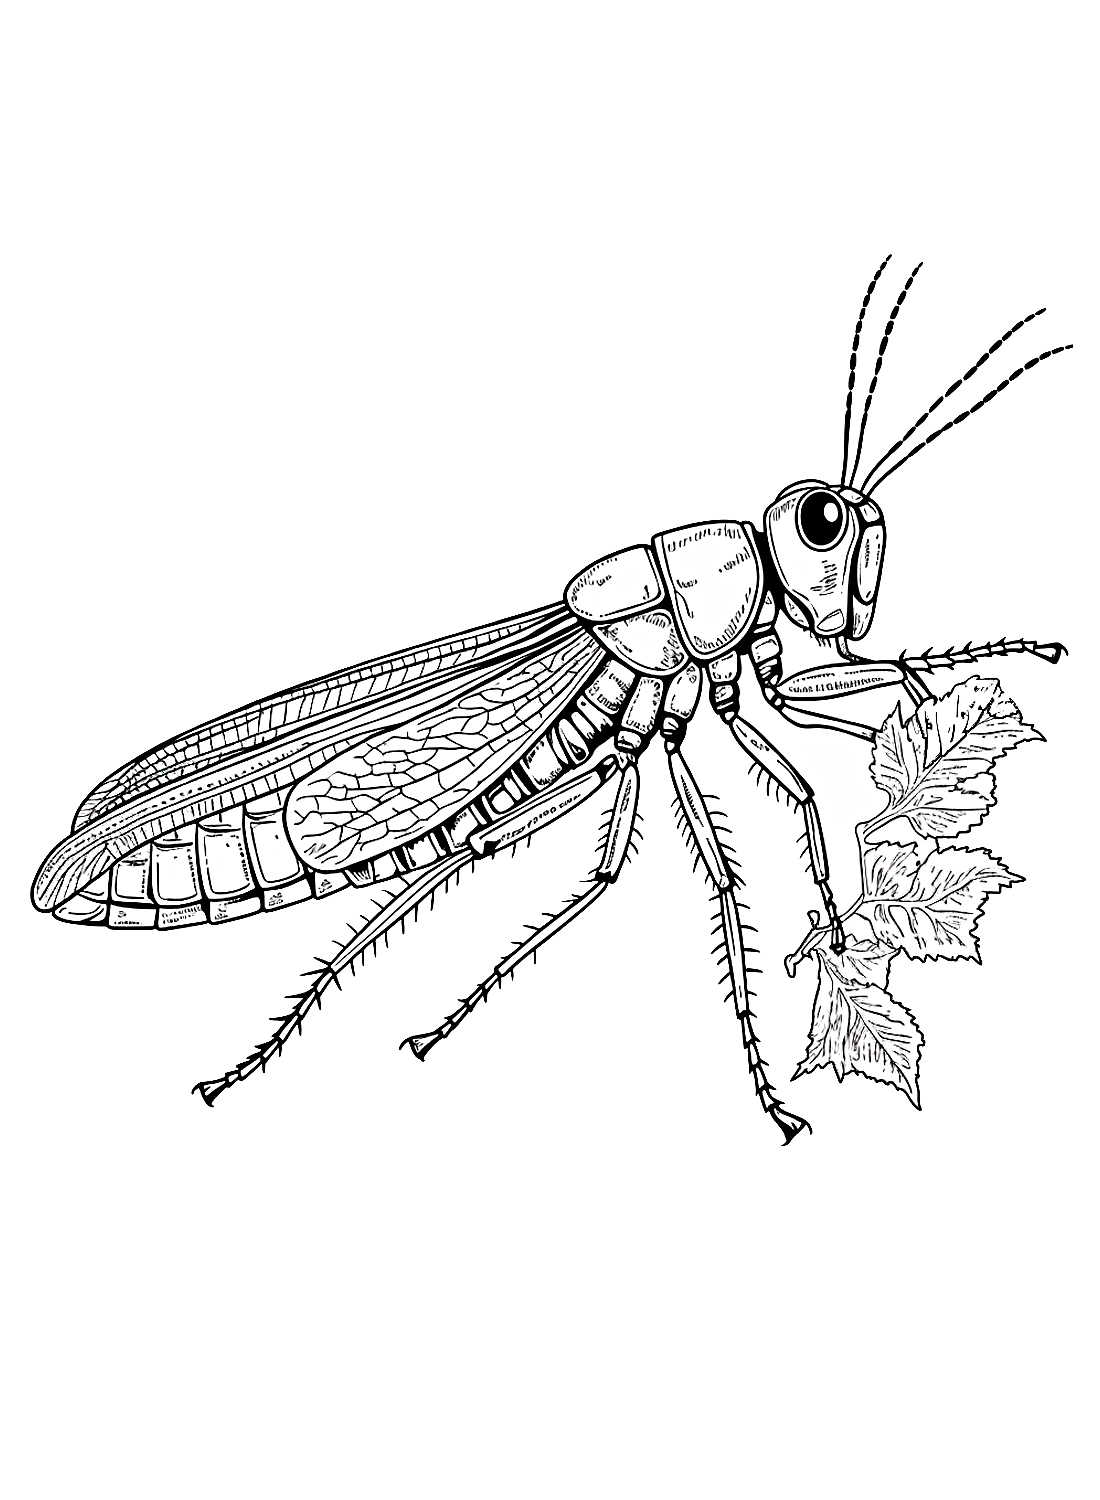 Распечатанная саранча от Locust